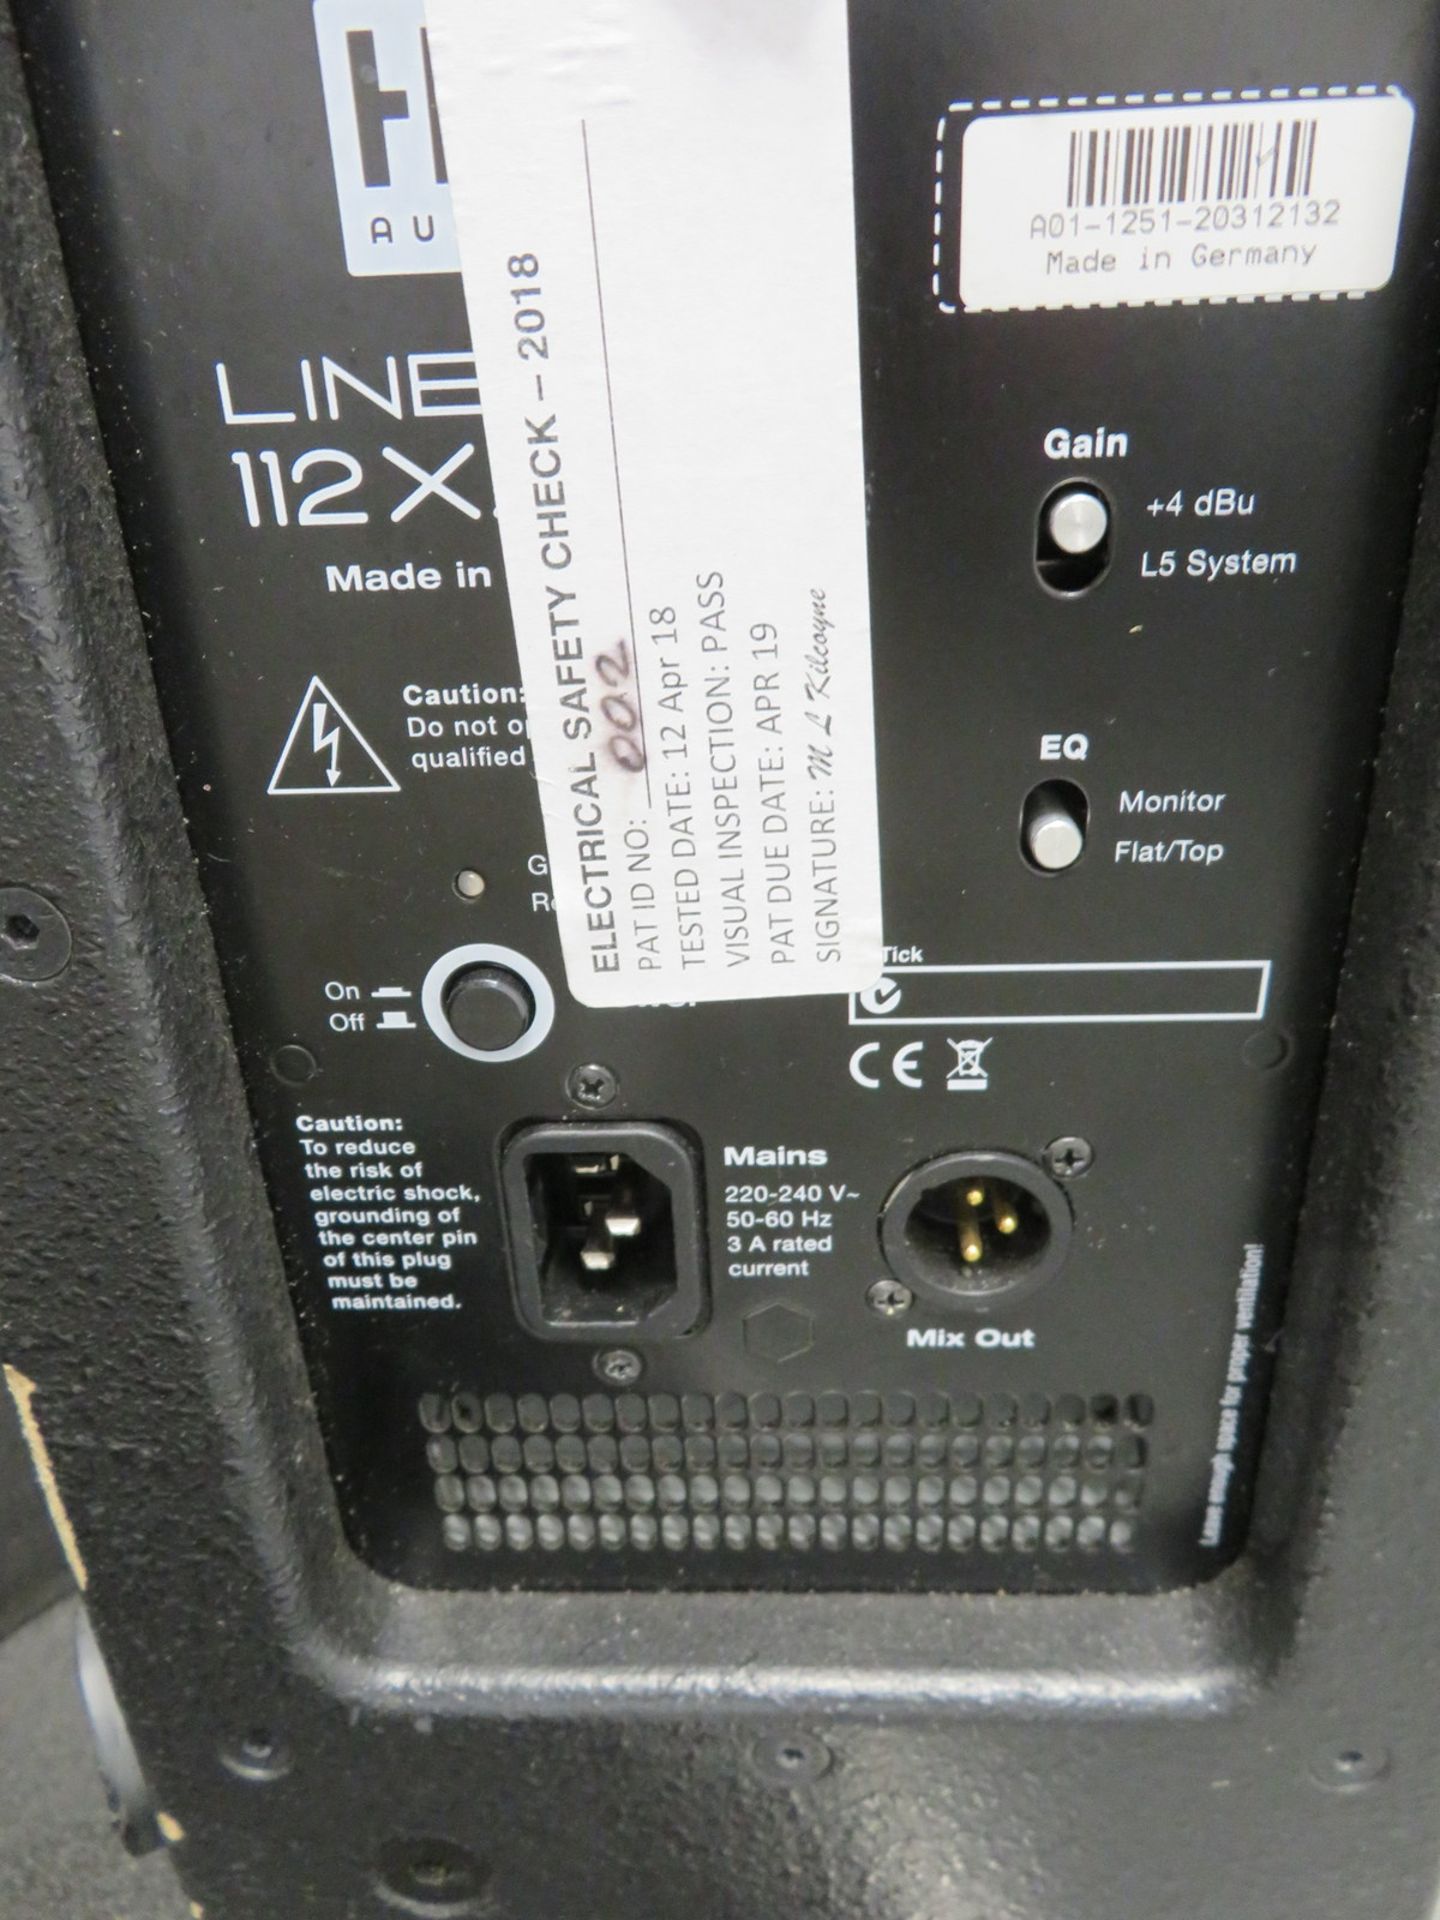 2x HK Audio 112XA monitor speakers. Serial numbers: 20312080 & 20312132. - Image 6 of 8